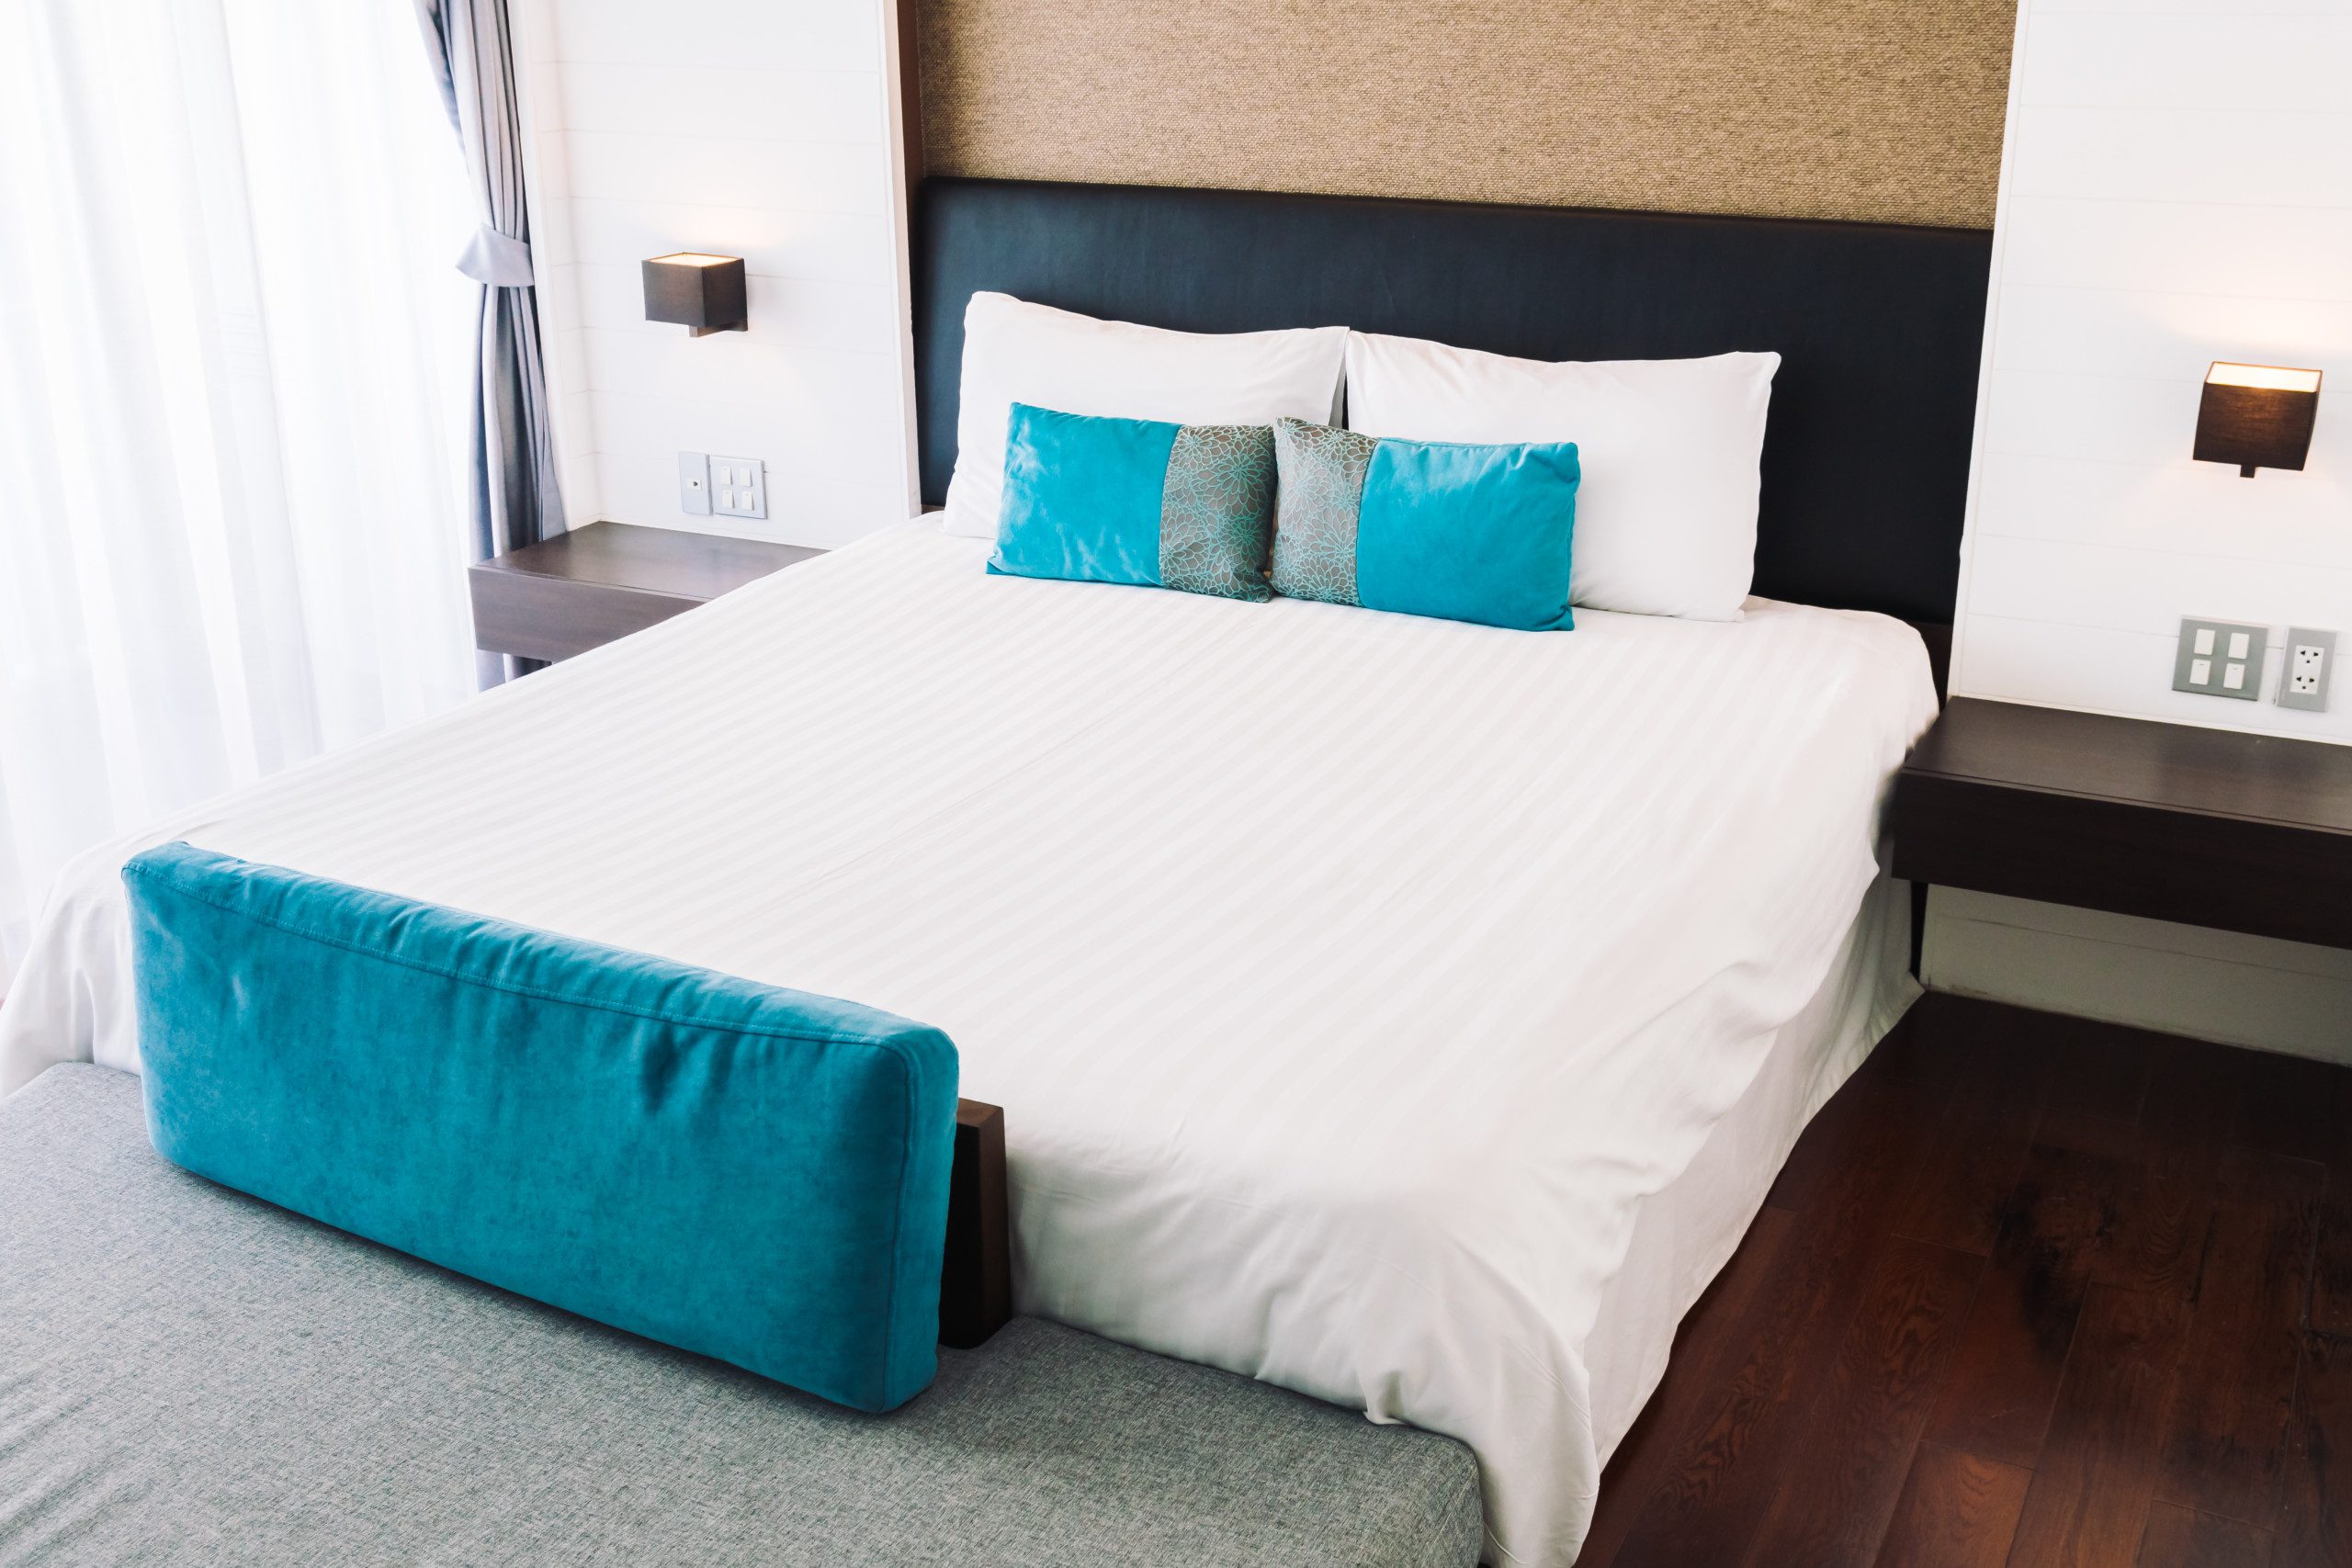 Foto de um quarto com uma cama com colcha branca e almofadas azuis e uma cabeceira preta.